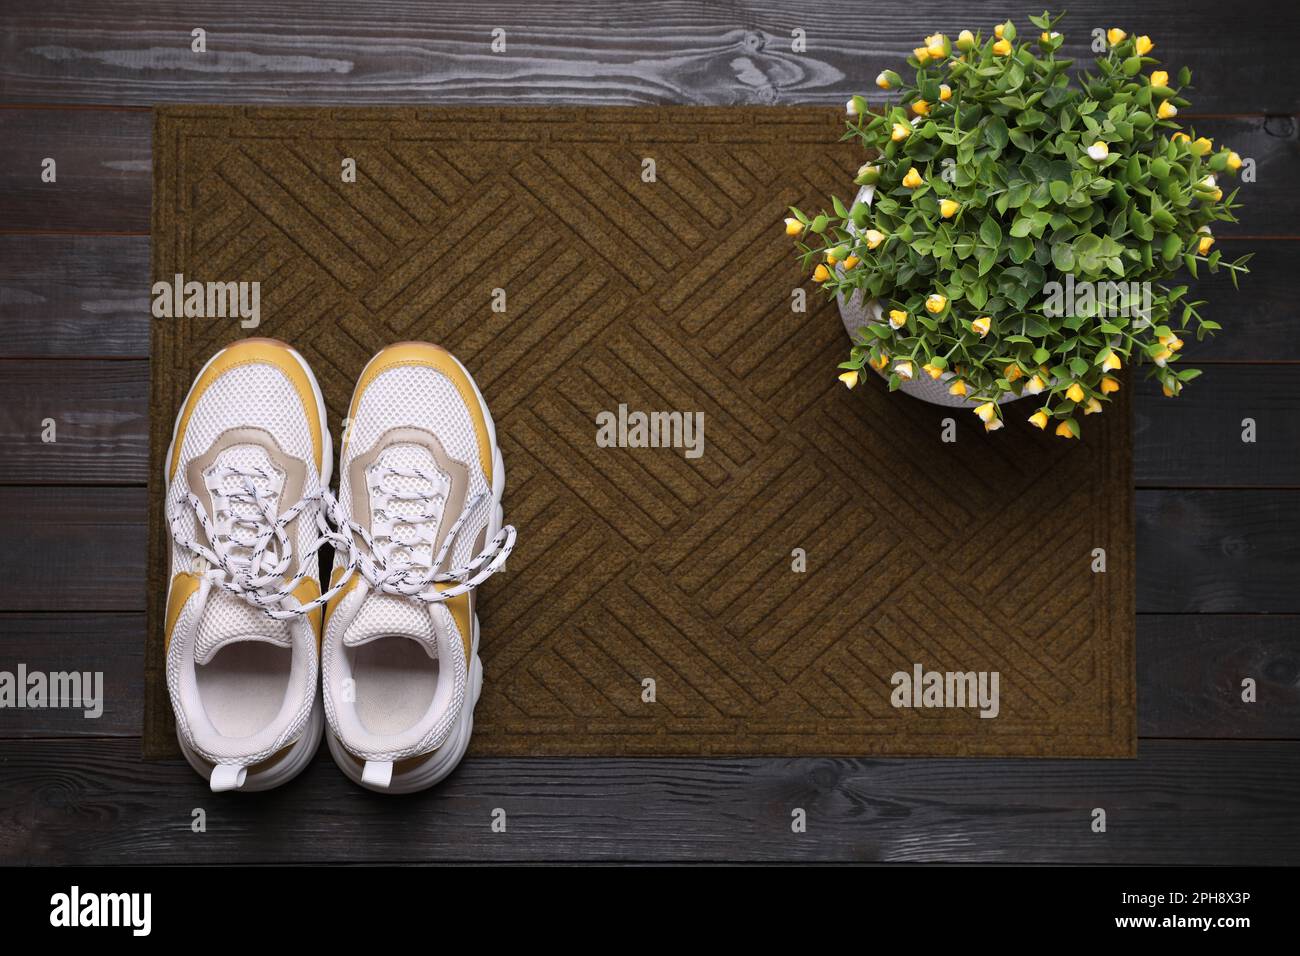 Nouveau tapis de porte propre avec chaussures et plante sur parquet noir, vue de dessus Banque D'Images